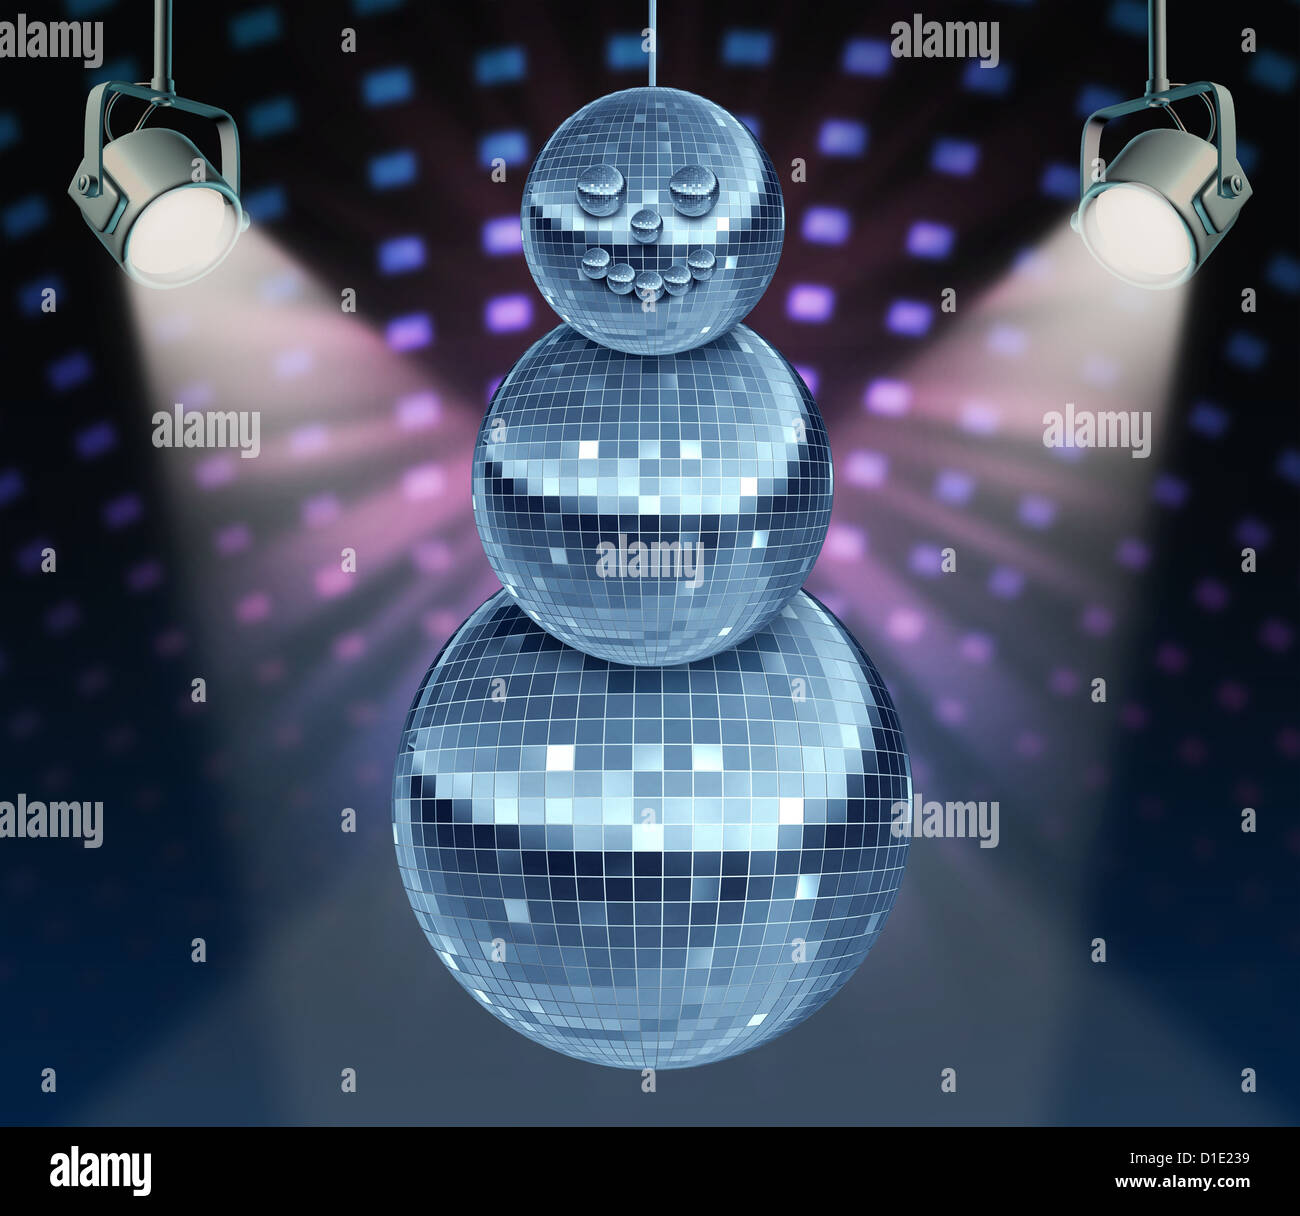 Winter Urlaub Musik Symbol mit Tanz Nacht Disco-Kugeln als Spiegel Kugel in  Form eines Schneemannes für festliche Spaß und Neujahr feiern tanzen Party  in einem Nachtclub oder Dance Club mit glühenden Bühnenbeleuchtung